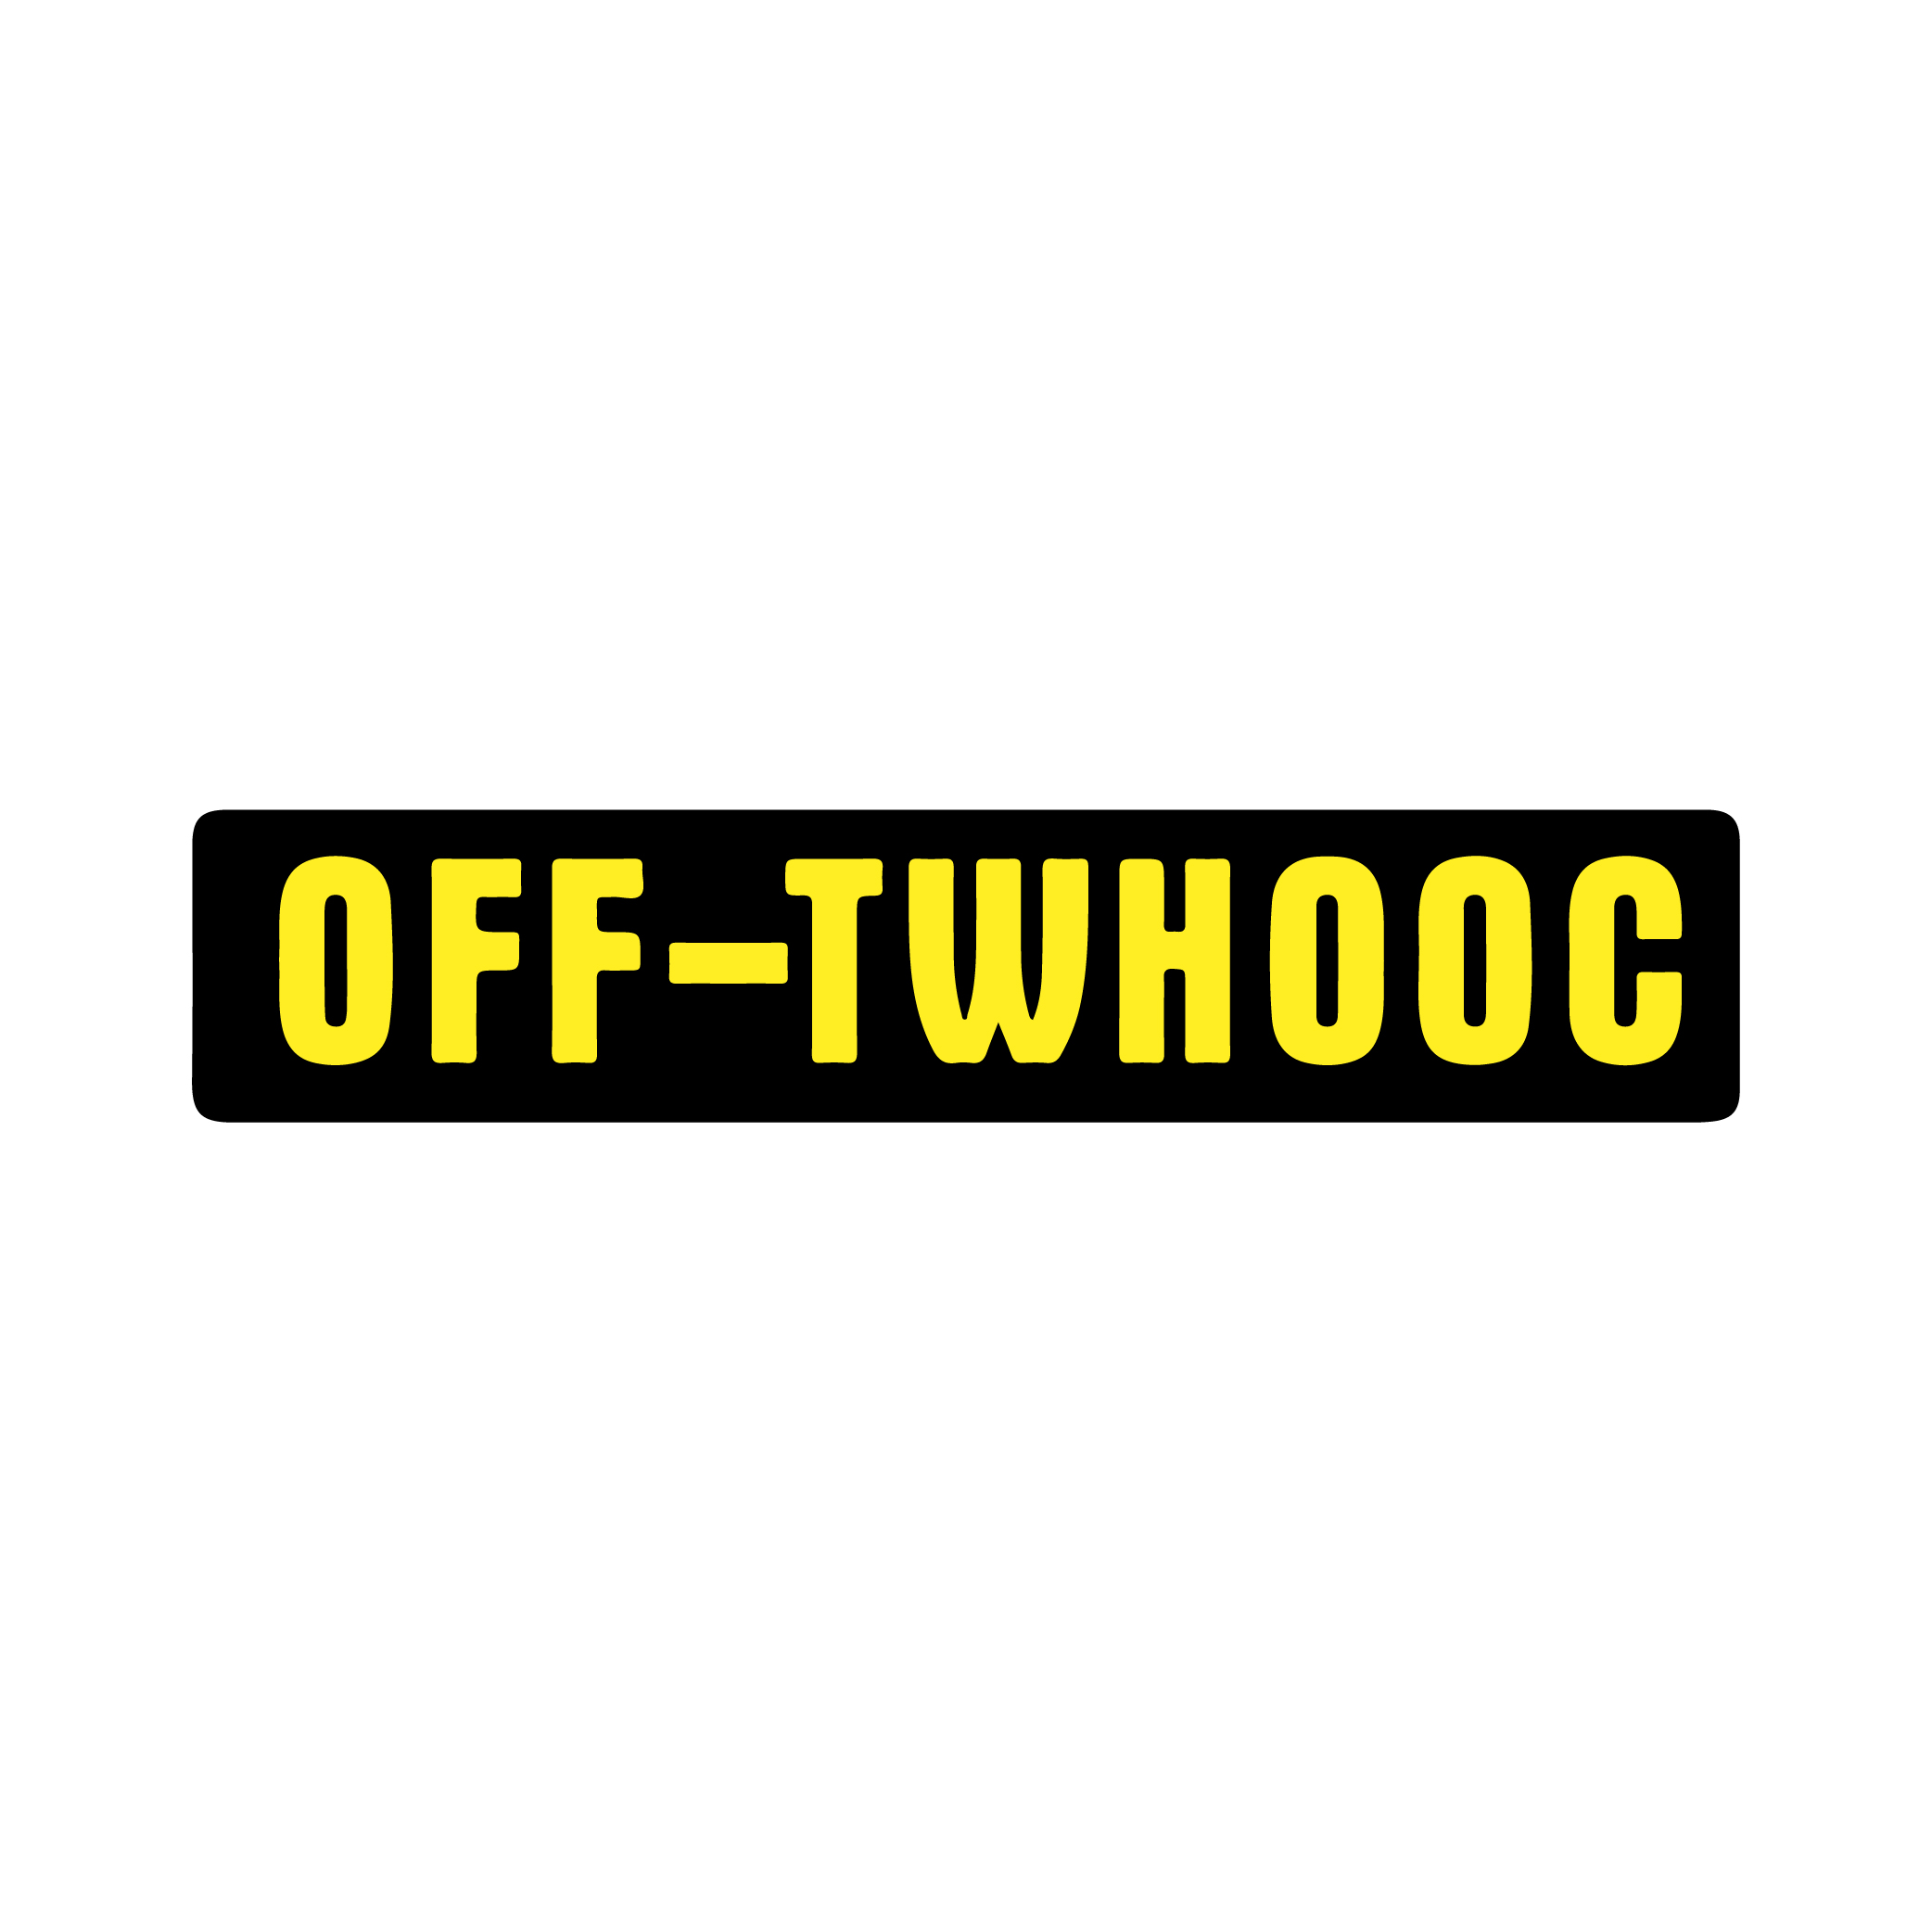 OFF-TWHOOC